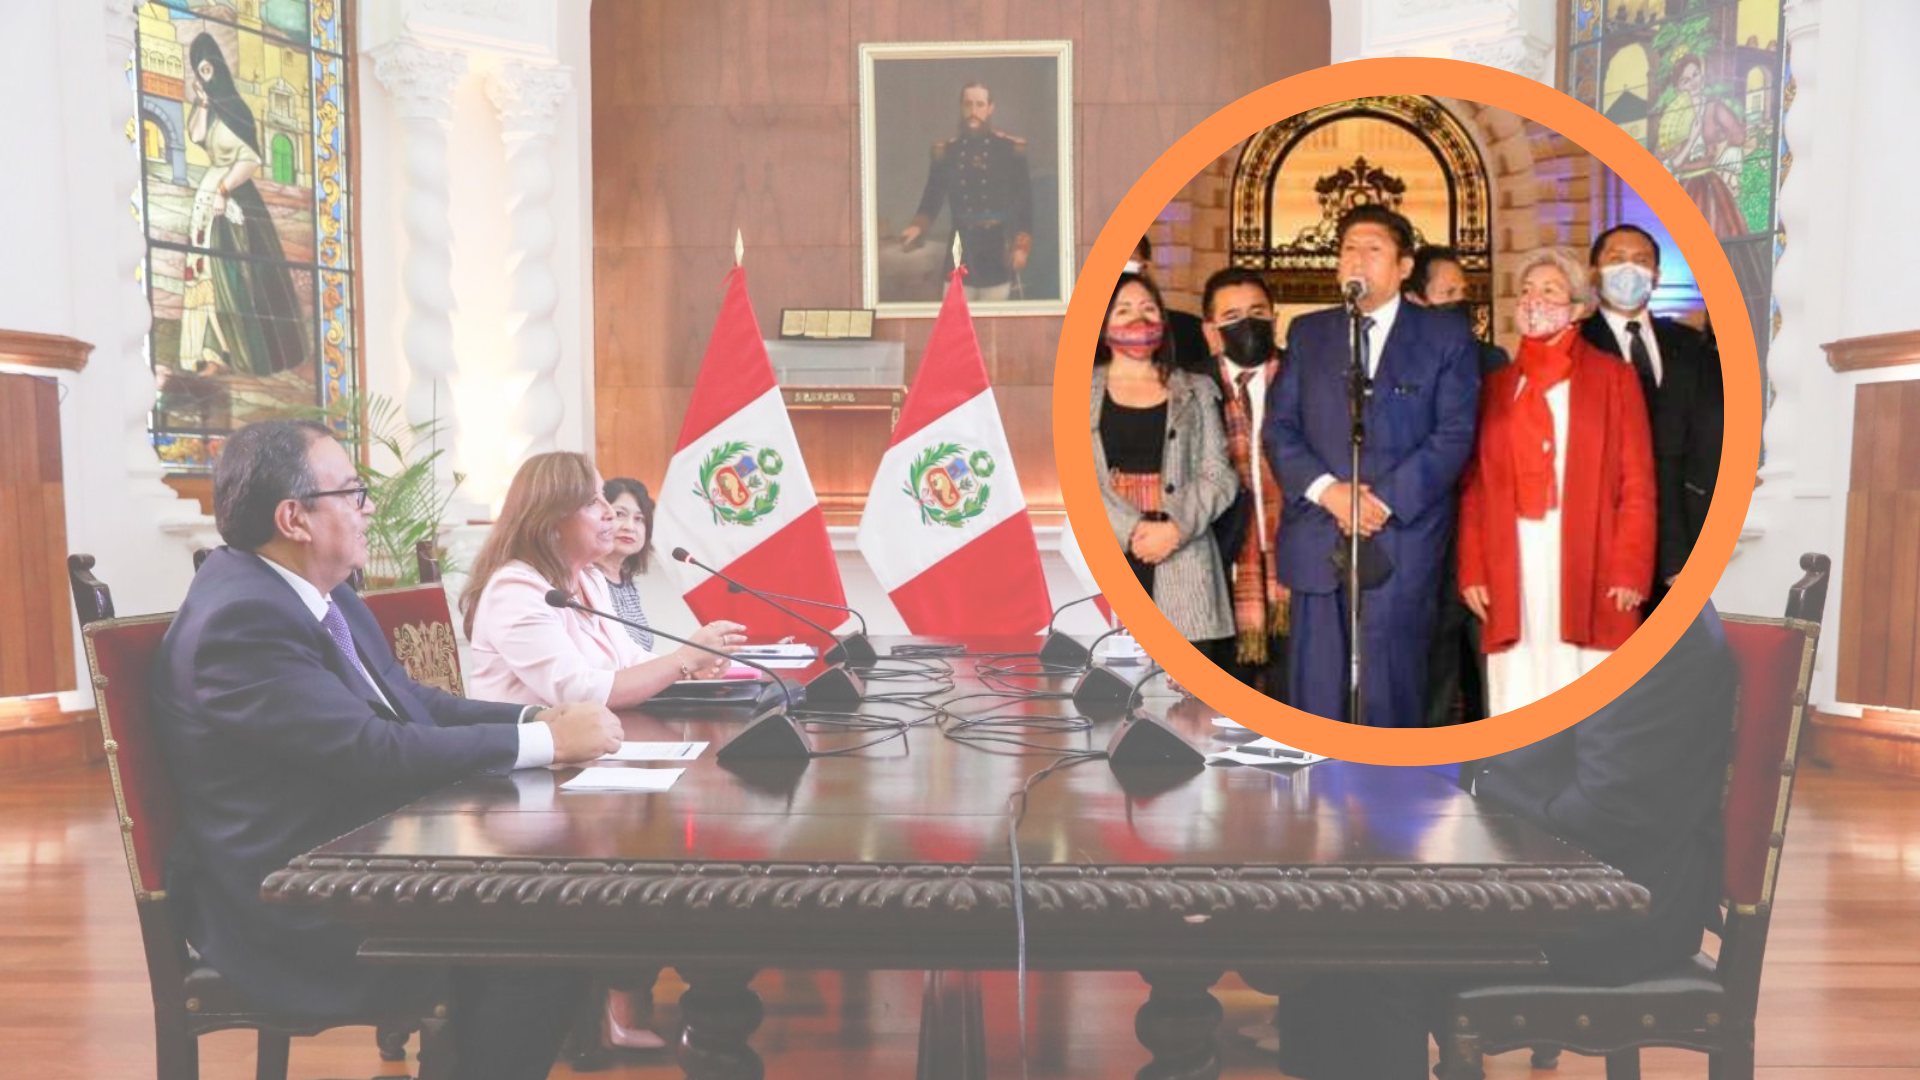 Perú Libre descartó reunirse con la presidenta Dina Boluarte: “Donde no te invitan, no puedes ir” 